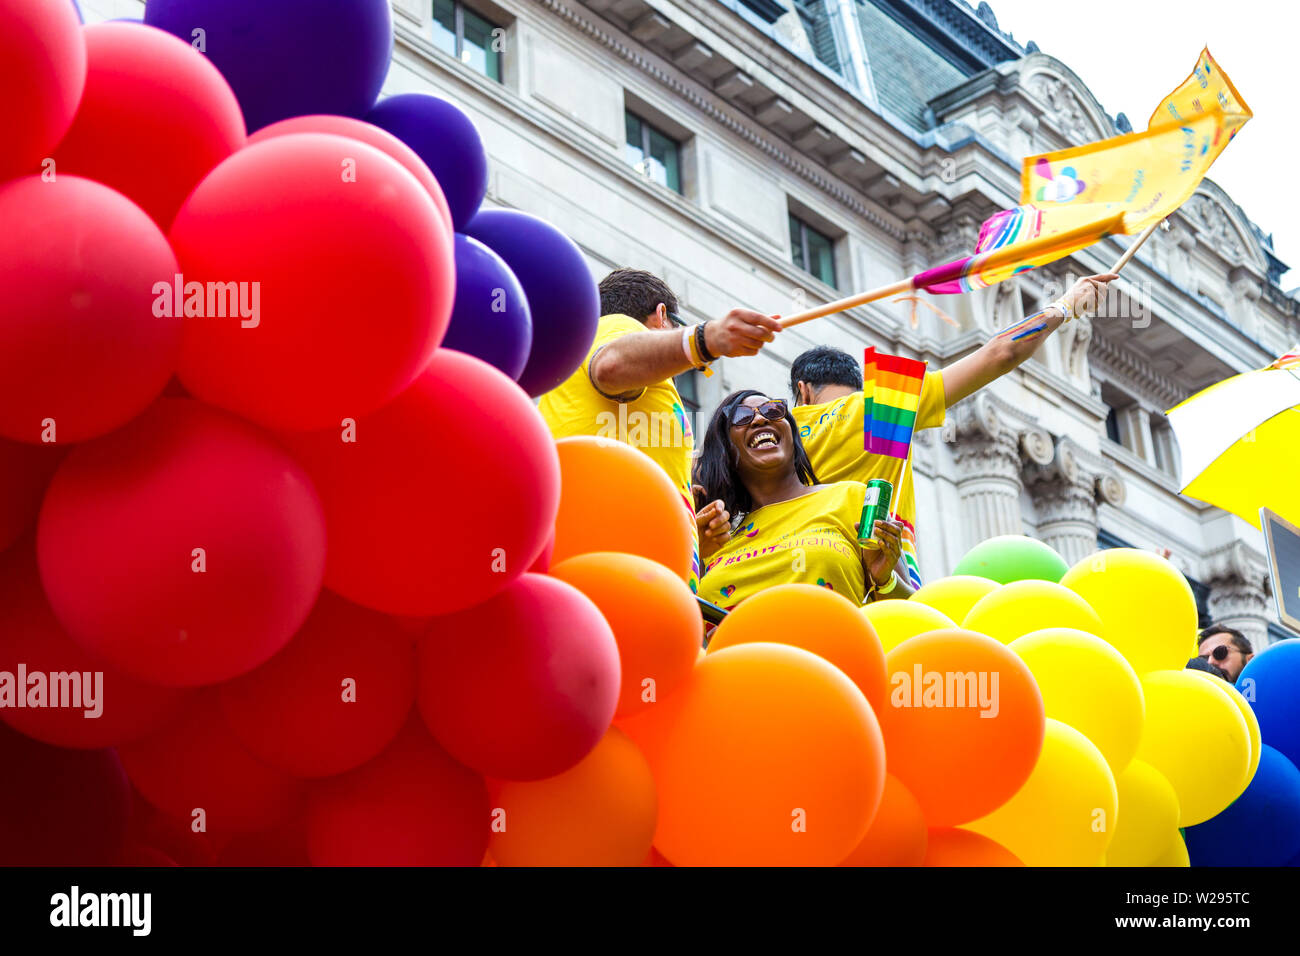 El 6 de julio de 2019 - la gente celebra el orgullo en un flotador rodeado de coloridos globos, Marcha del orgullo gay de Londres, Reino Unido Foto de stock